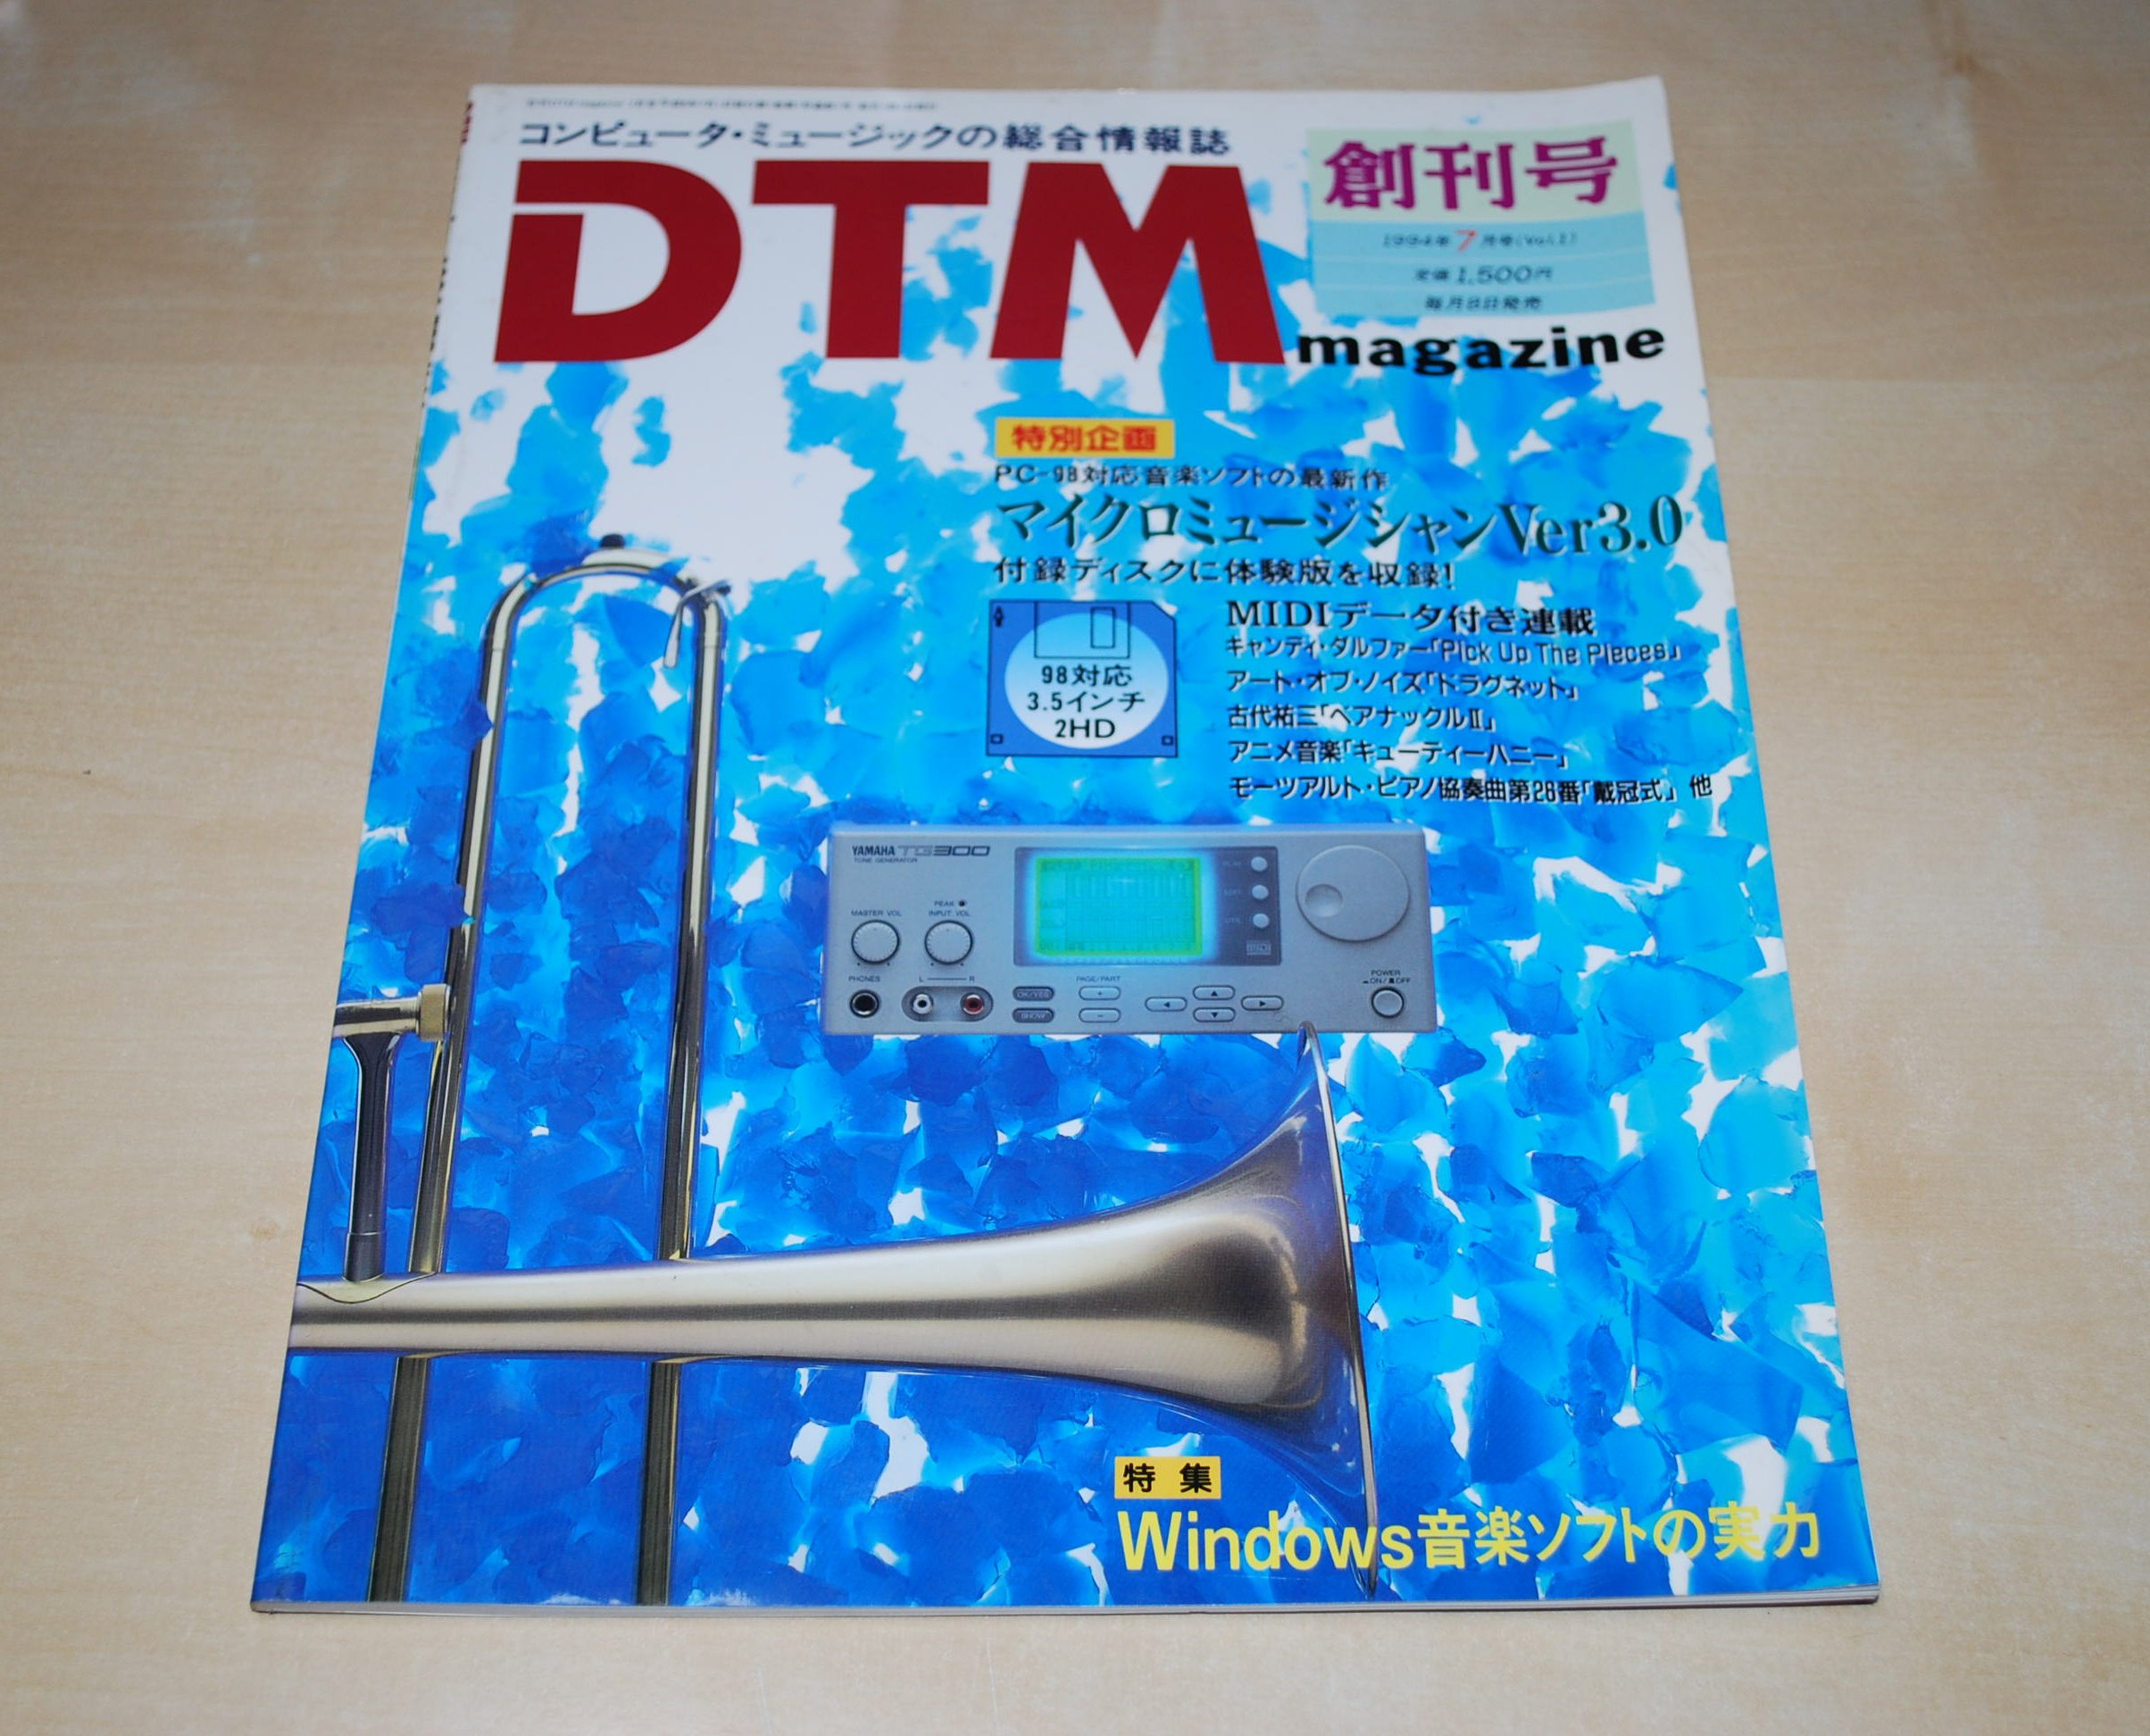 23年の歴史に幕。通巻第273号、DTMマガジンが休刊に | 藤本健の “DTMステーション”